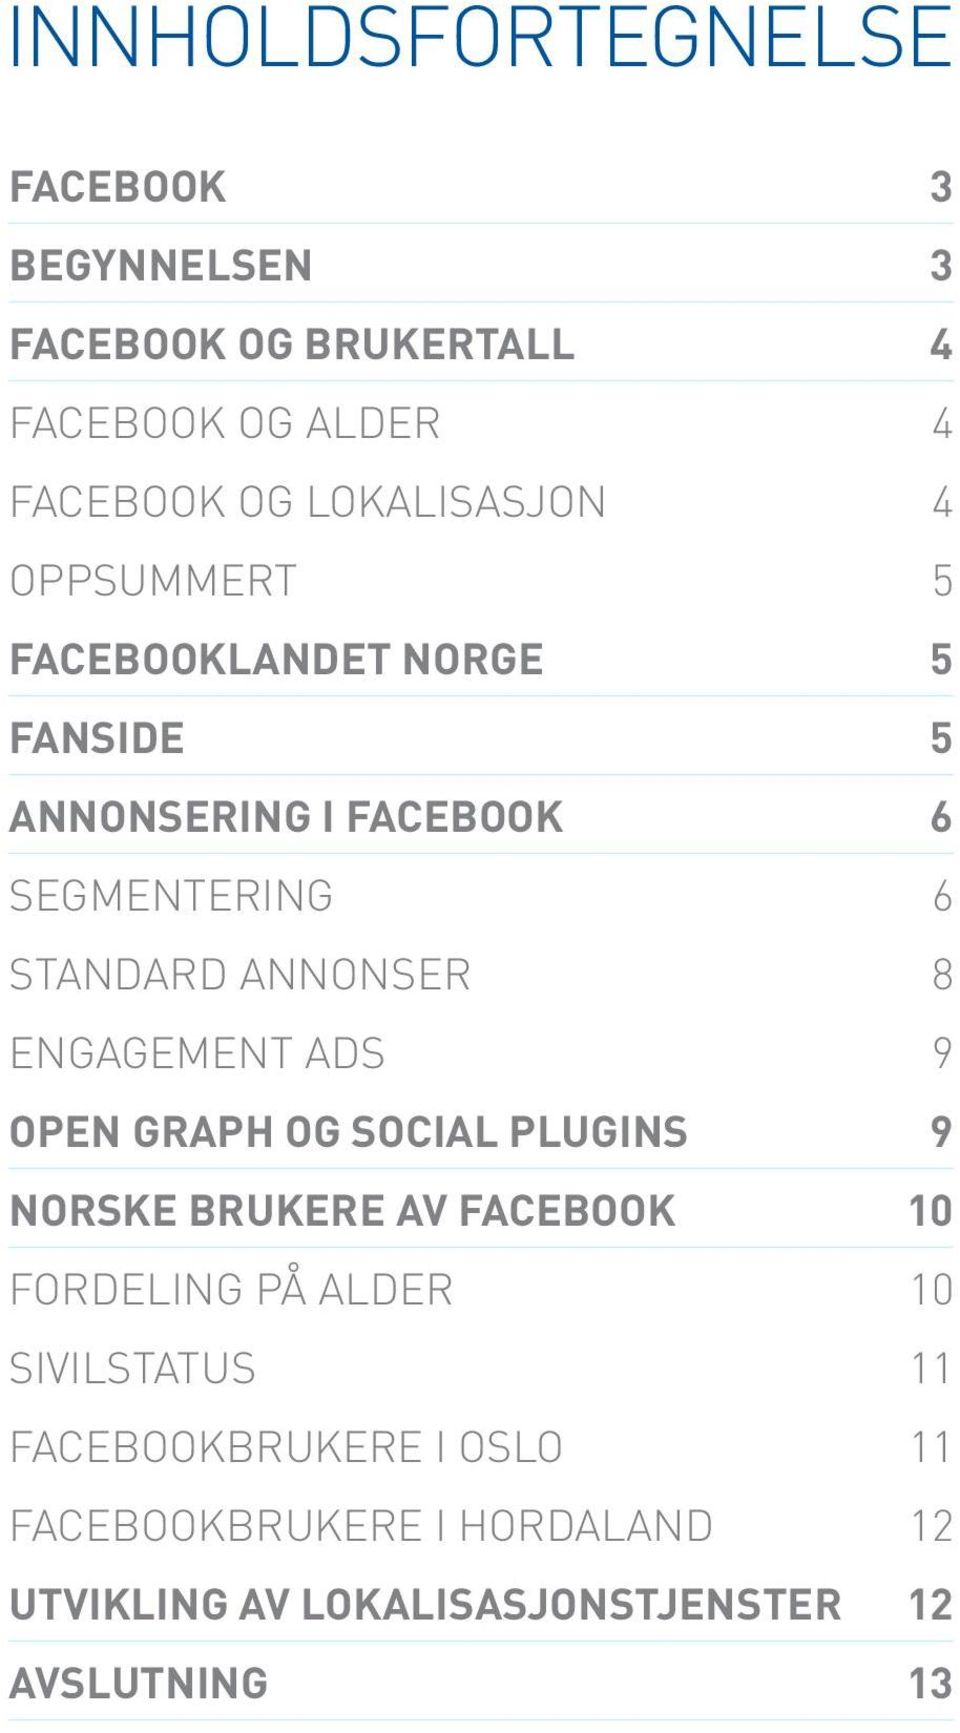 ANNONSER 8 ENGAGEMENT ADS 9 OPEN GRAPH OG SOCIAL PLUGINS 9 NORSKE BRUKERE AV FACEBOOK 10 FORDELING PÅ ALDER 10